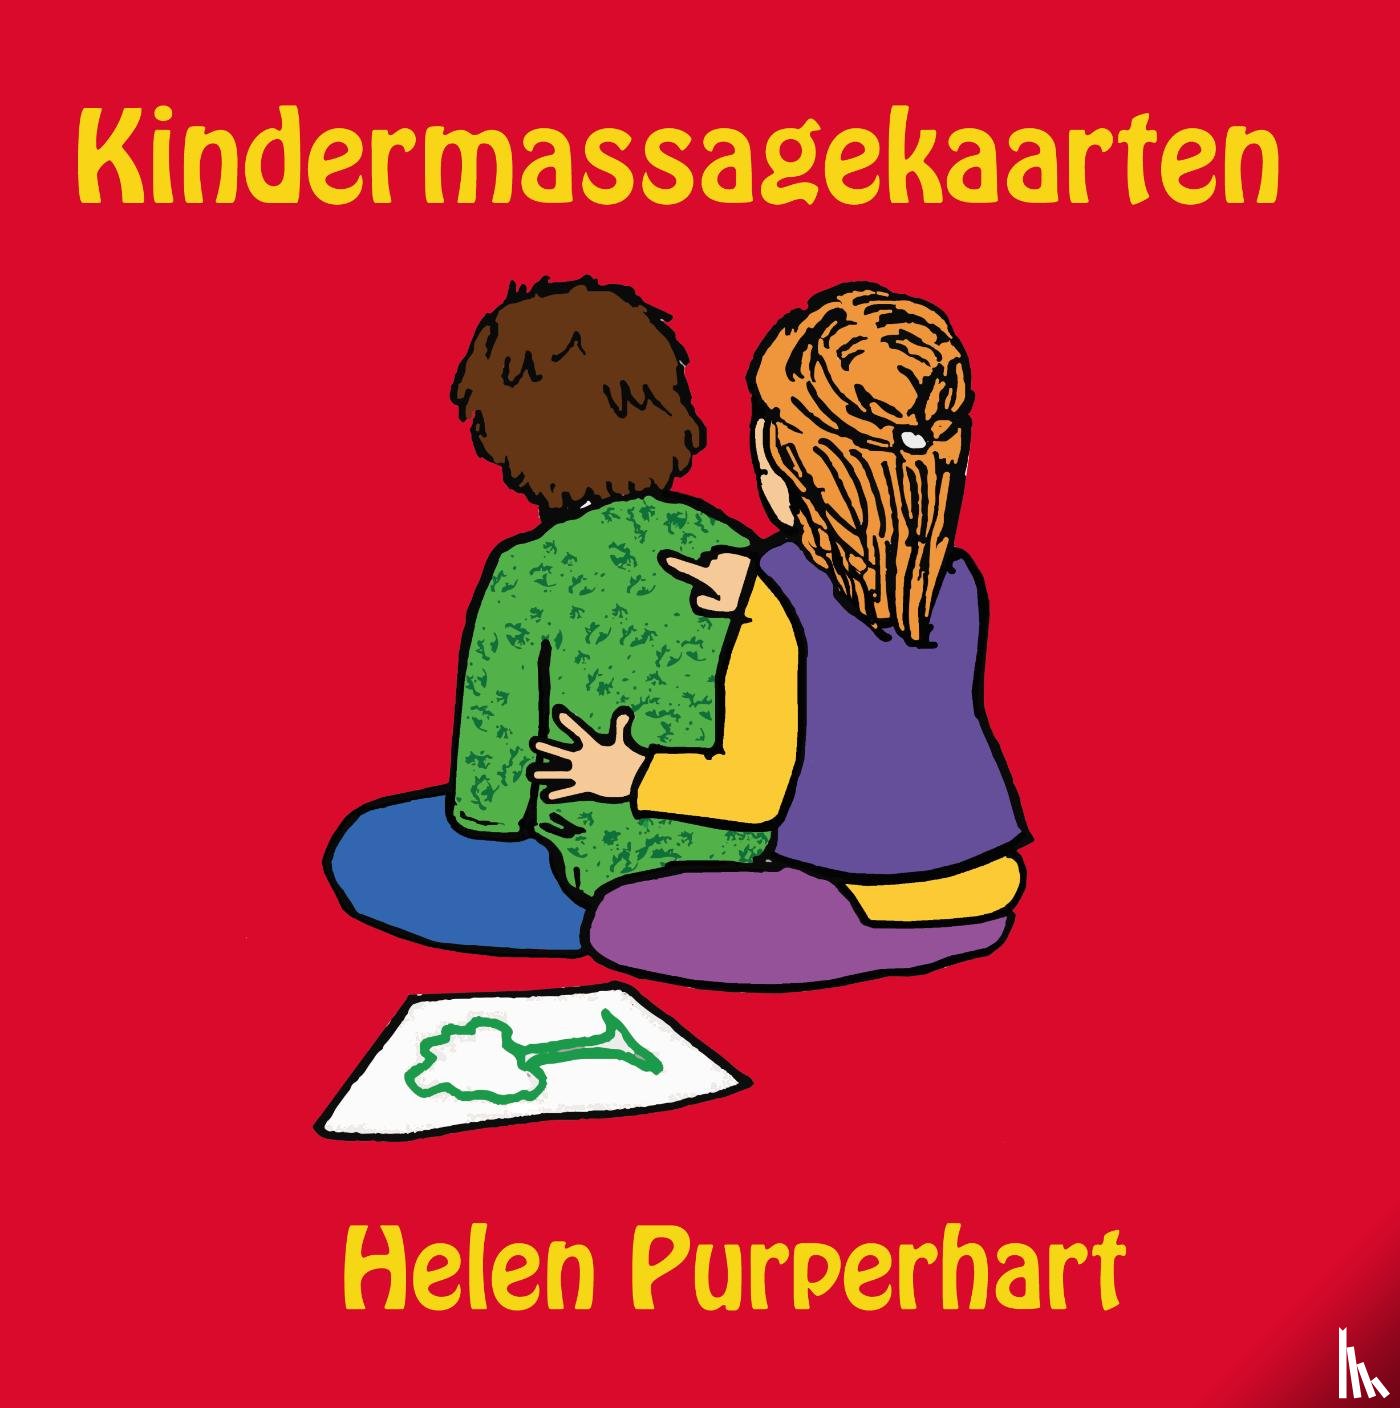 Purperhart, Helen - Kindermassagekaarten